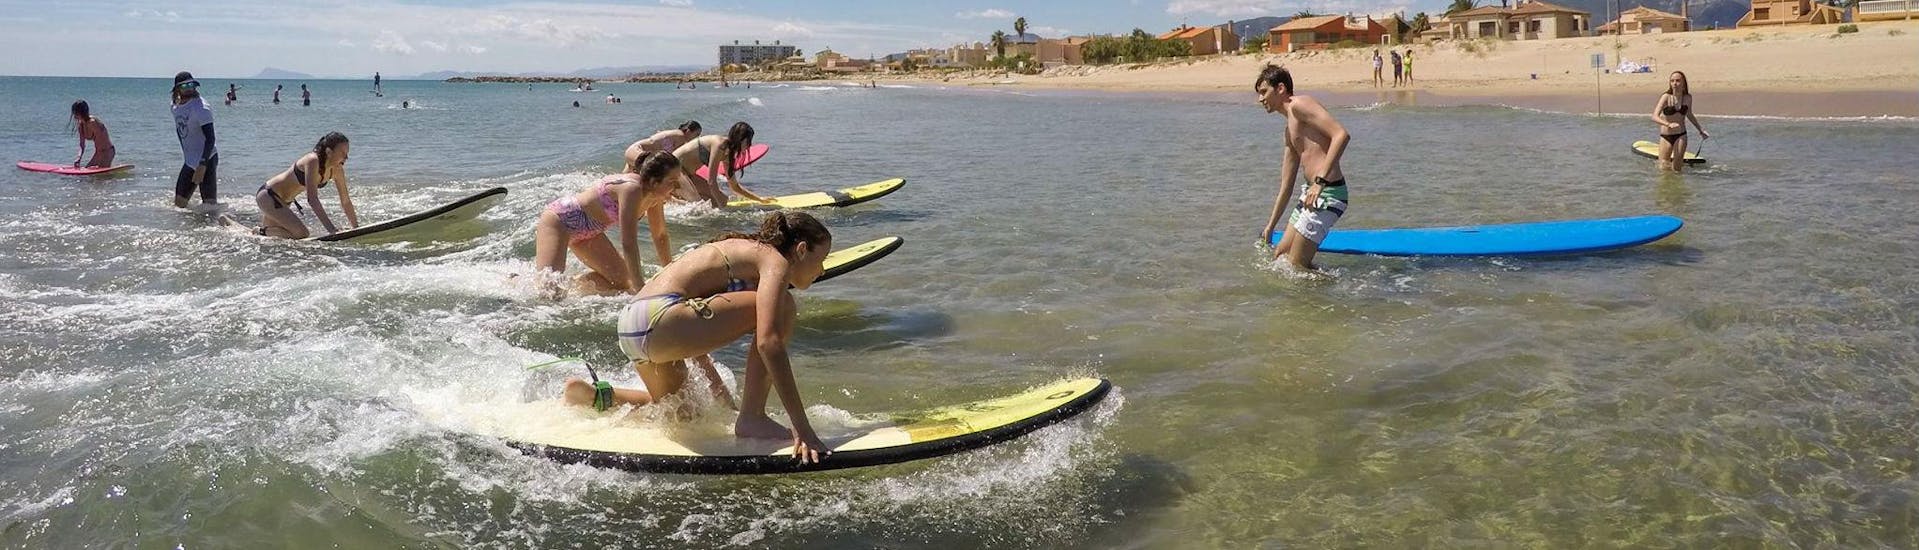 Surflessen in Cullera vanaf 4 jaar voor alle niveaus.